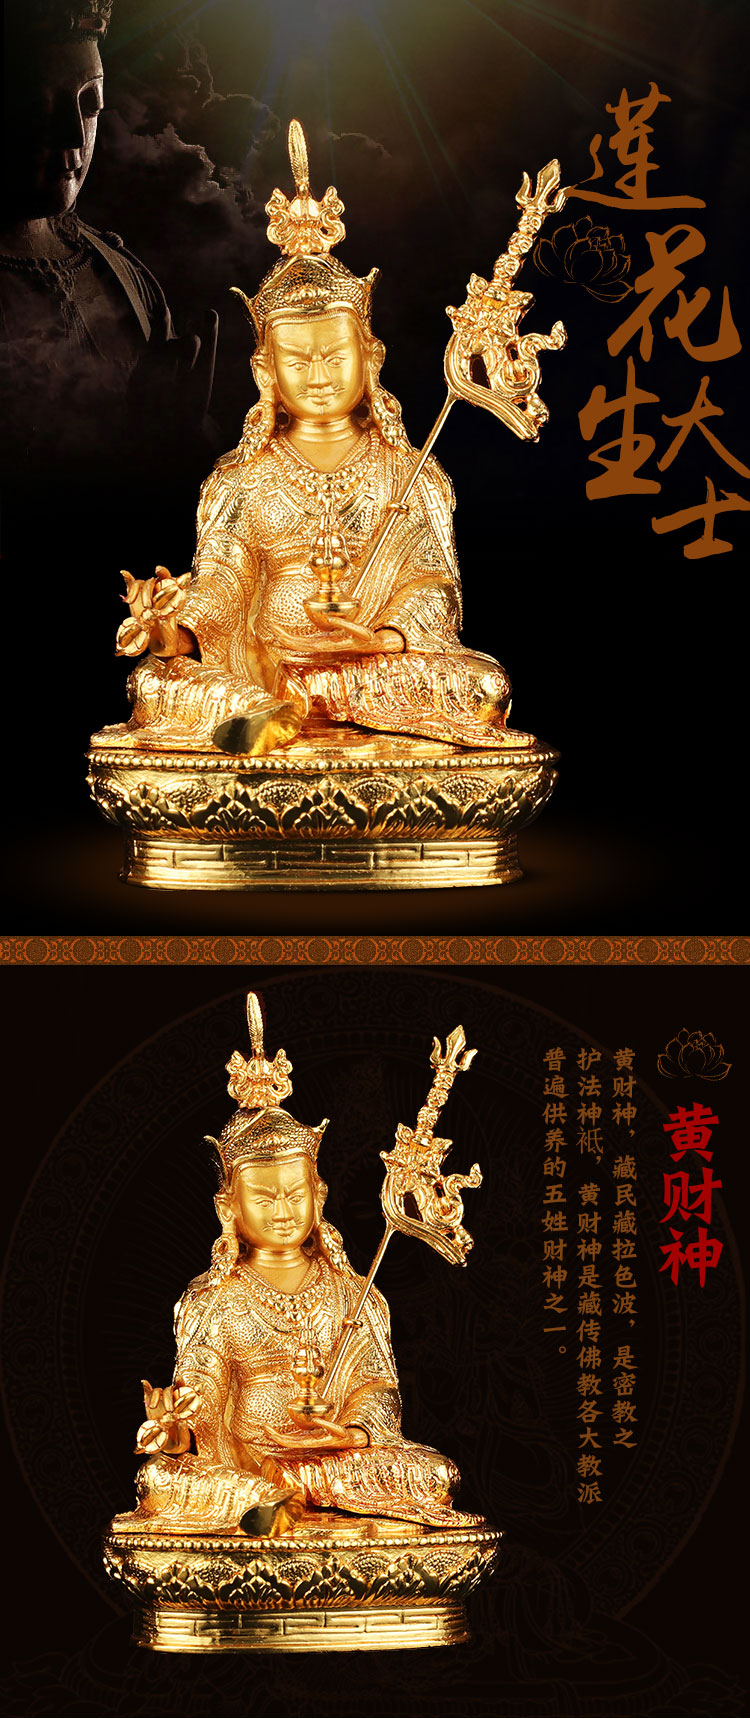 藏傳佛教密宗佛像四臂觀音釋迦摩尼黃財神金剛薩埵文殊佛堂小佛像 